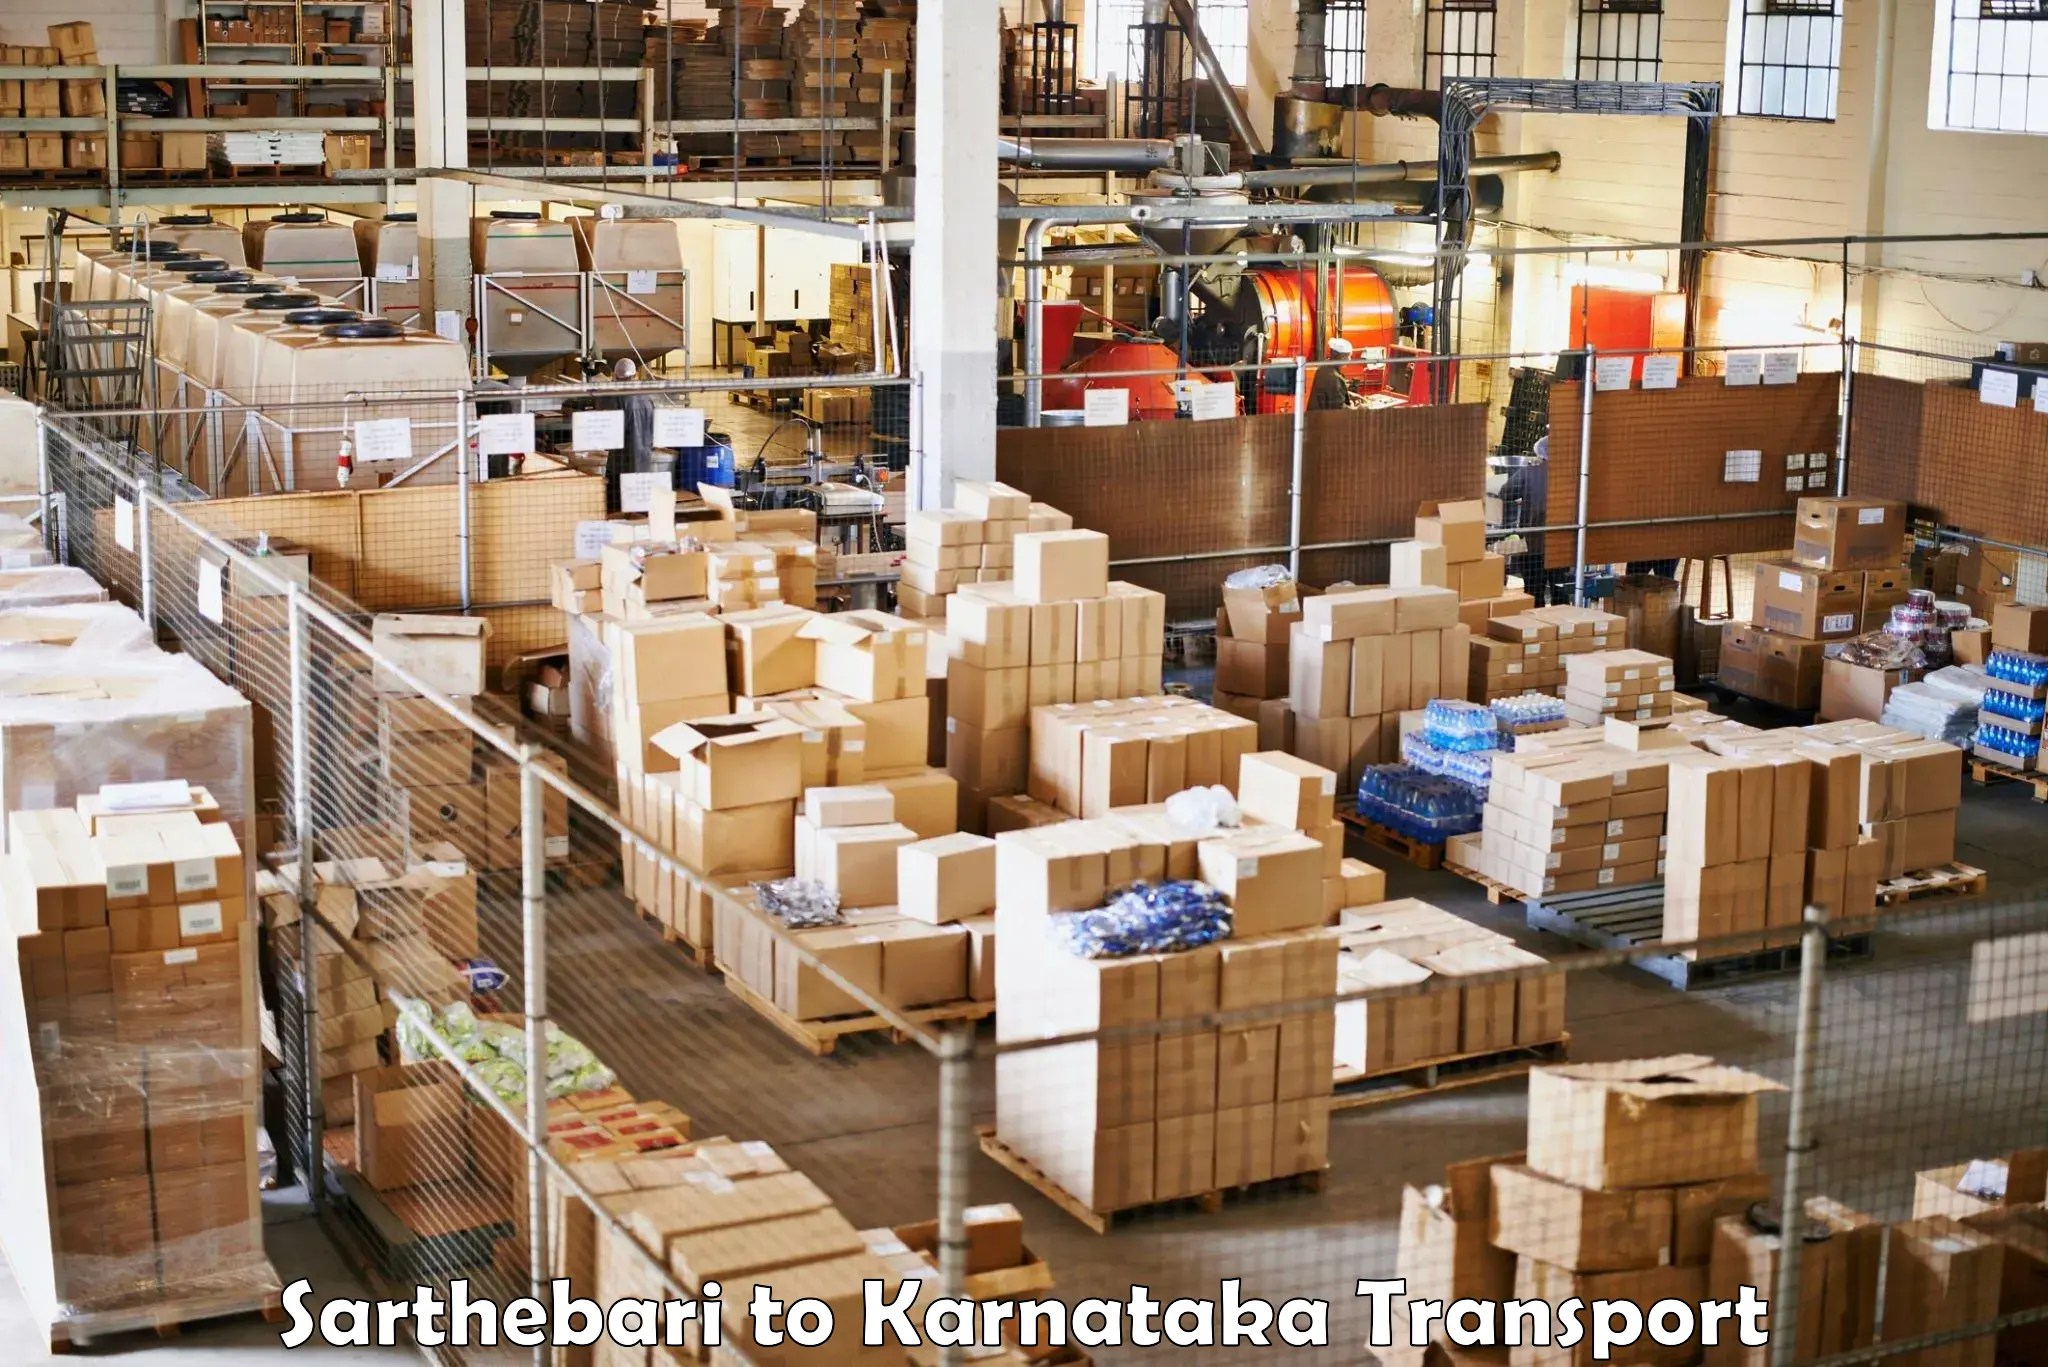 Truck transport companies in India Sarthebari to Kalasa